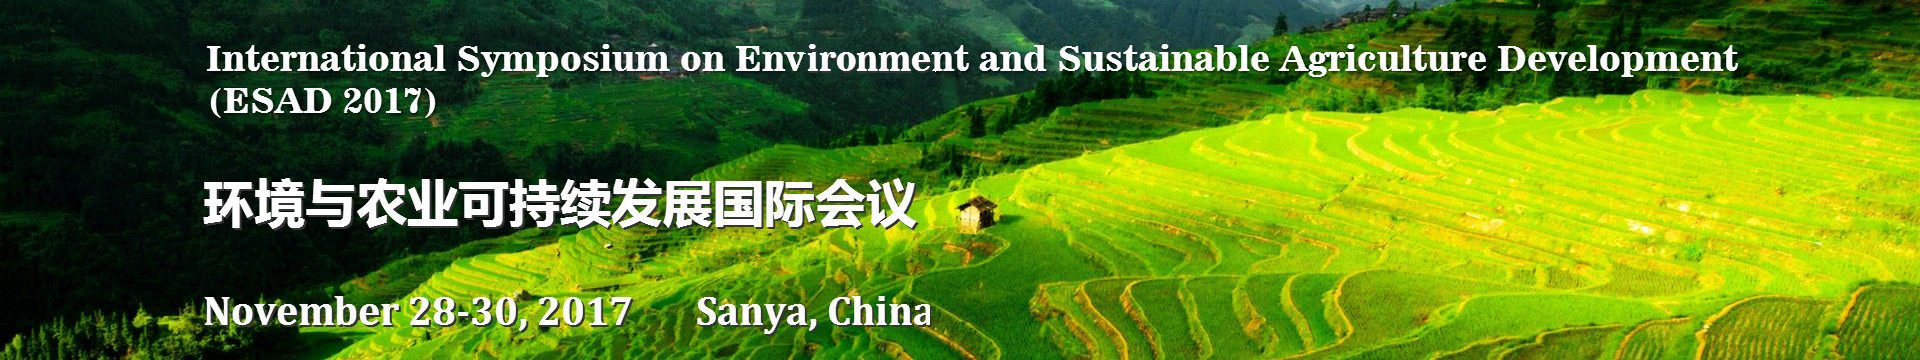 2017年环境与农业可持续发展国际会议(ESAD 2017)